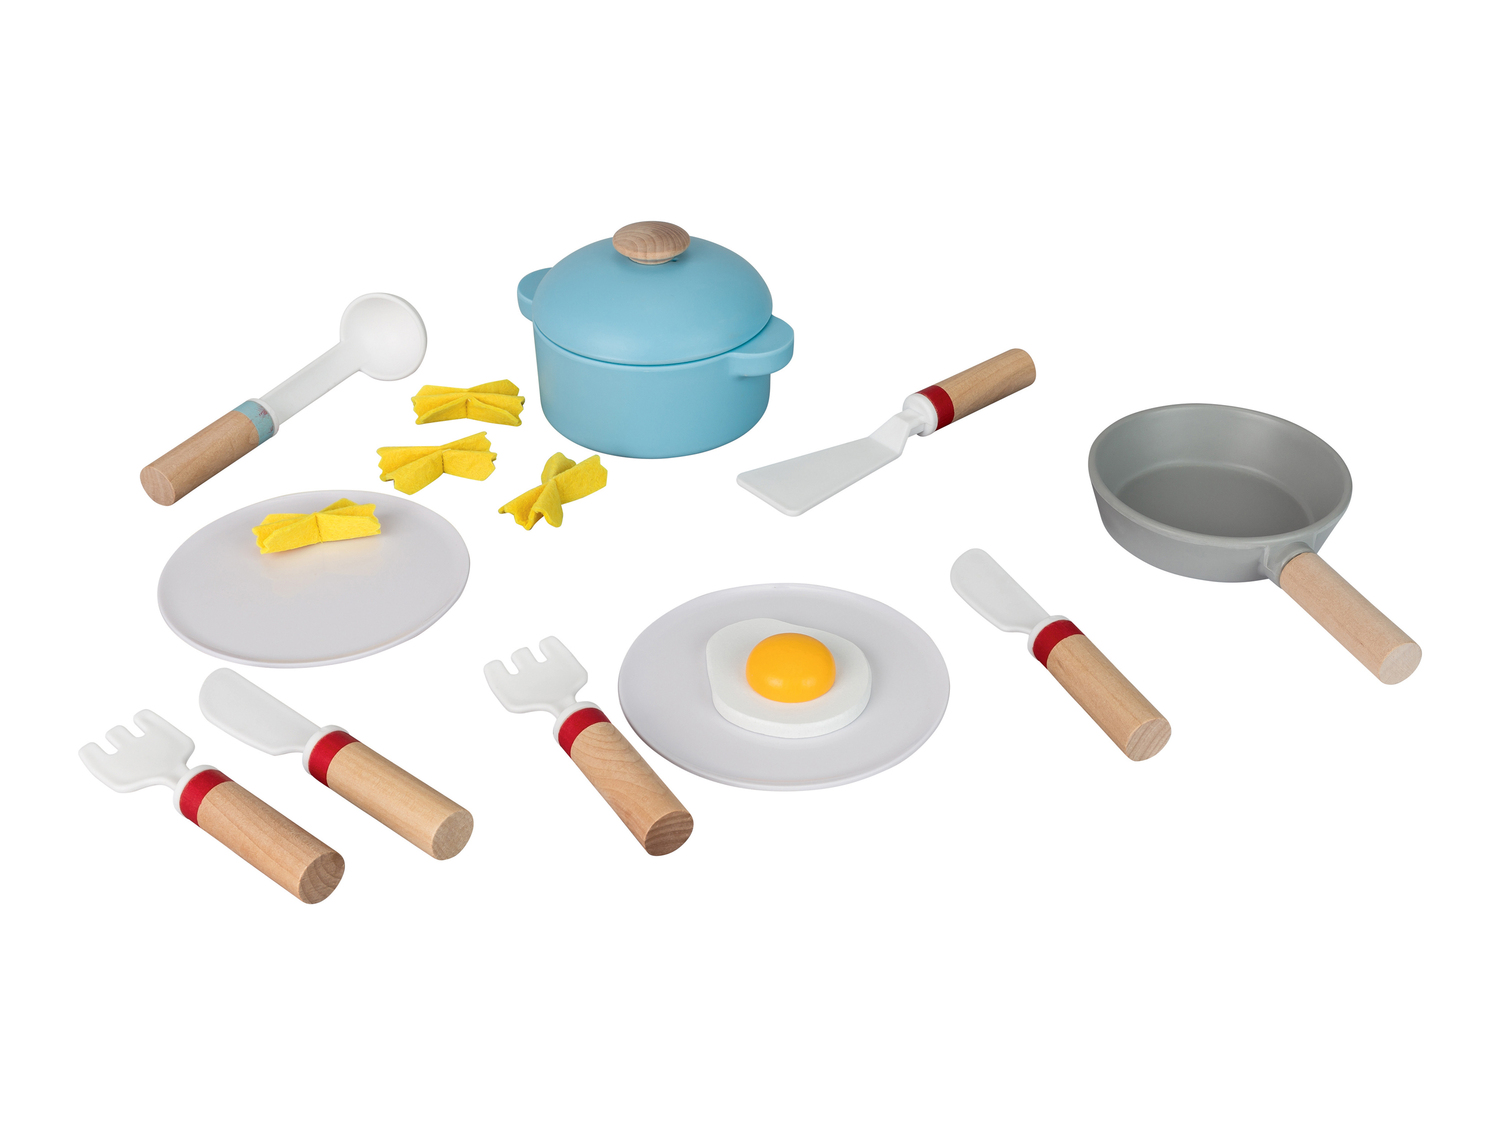 Gioco utensili per cucina giocattolo Playtive, prezzo 9.99 &#8364; 

Caratteristiche

- ...